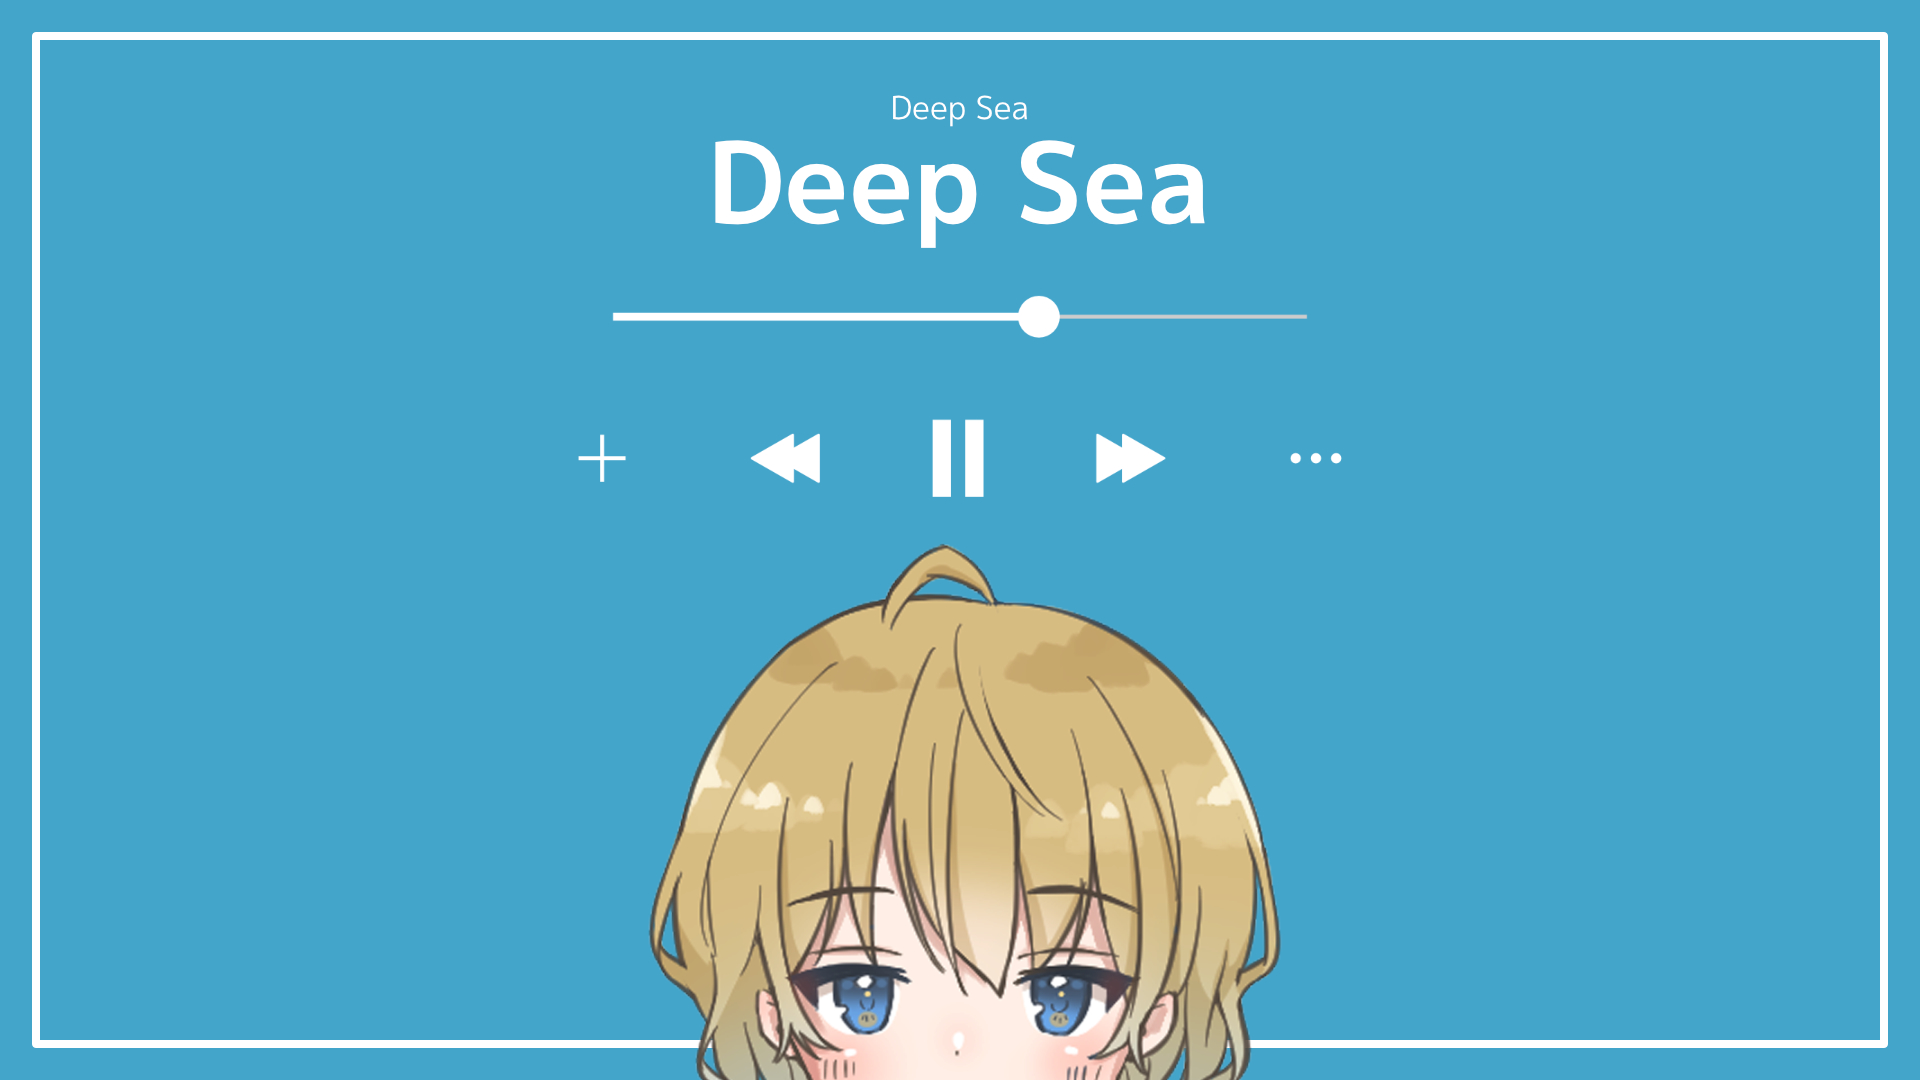 おしゃれ/エンディング/感動/静か/ゆったり「Deep Sea」